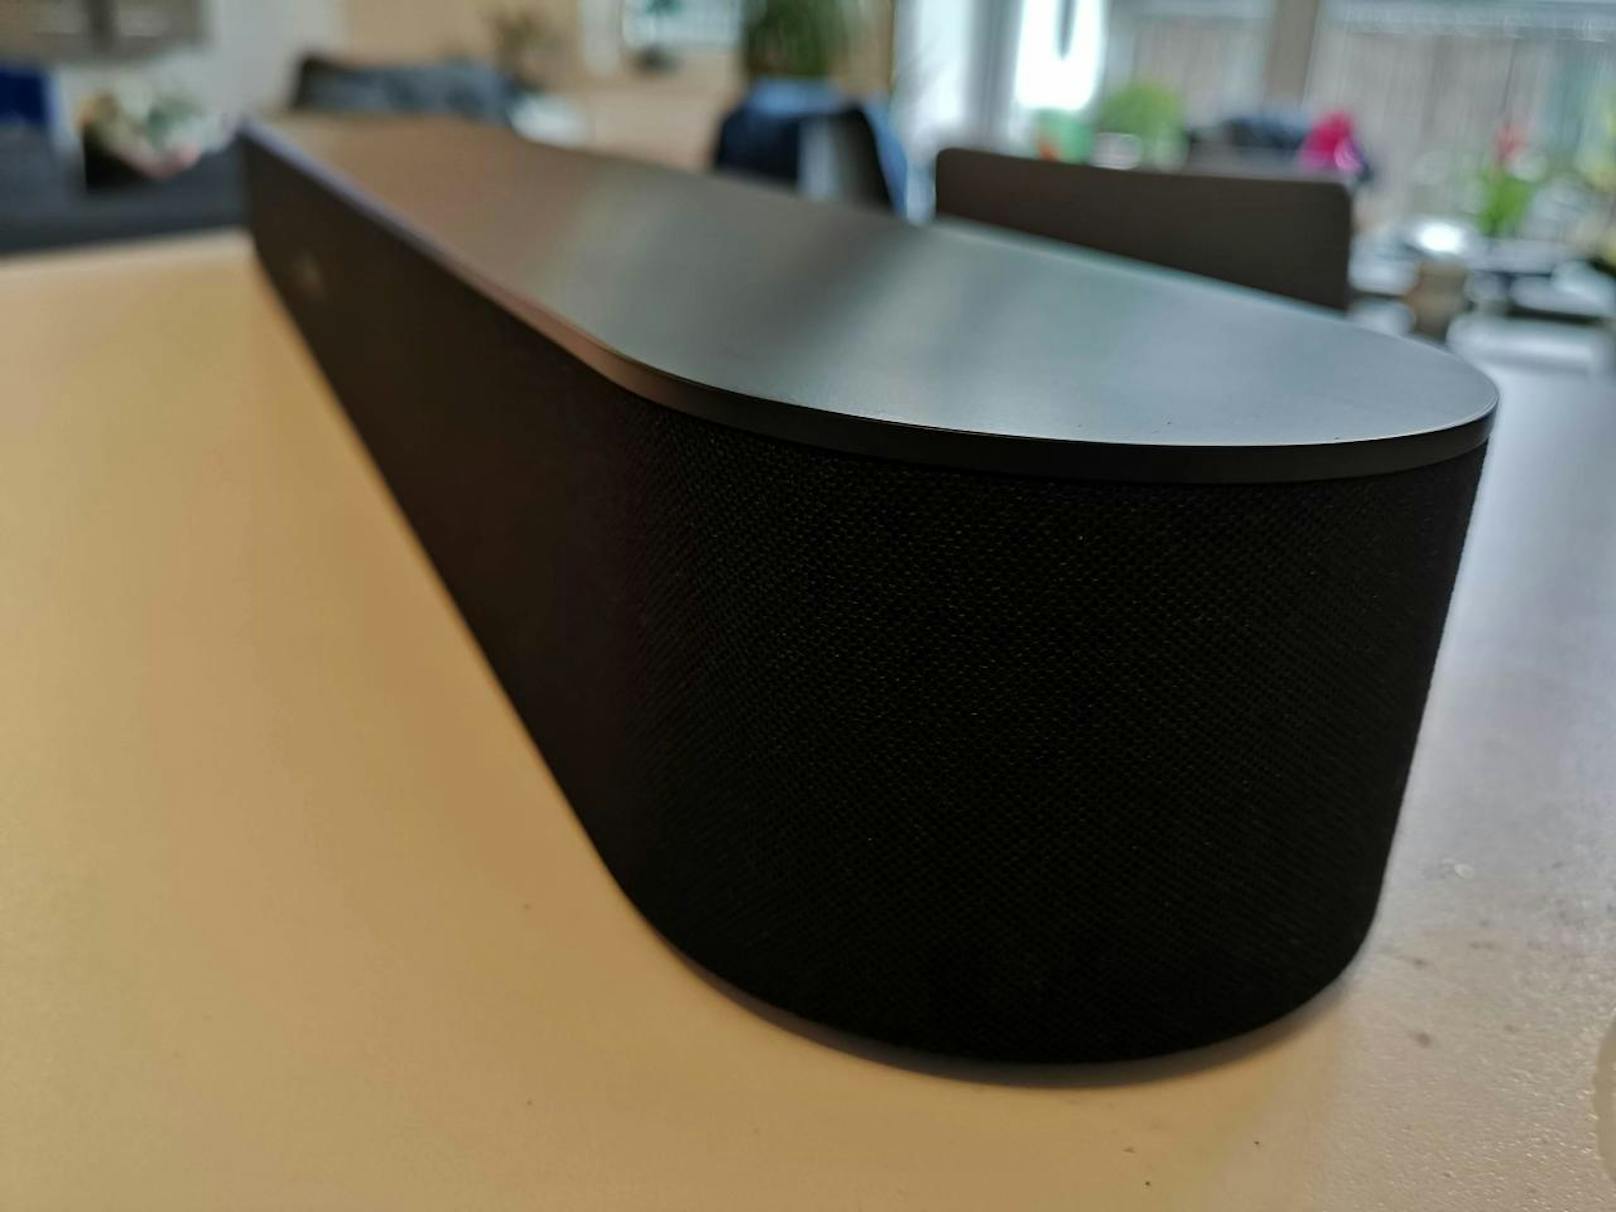 <b>18. Juli 2018:</b> Die schlaue Soundbar Sonos Beam ist ab sofort in den Farben Schwarz und Weiß auf Sonos.com oder im ausgewählten Fachhandel zum Preis von 449 Euro erhältlich. Der neue Allrounder von Sonos liefert raumfüllenden Sound für jegliche Art von Audio-Inhalten. Egal ob Film, TV, Musik, Hörbuch oder Podcasts - die Sonos Beam bringt Sound ins Wohnzimmer. Darüber hinaus unterstützt Beam über 80 Musikdienste, mehrere Sprachassistenten sowie Apple AirPlay 2. Ab sofort kann Audible zudem mit Amazon Alexa via Sprache gesteuert werden. <a href="https://www.heute.at/digital/multimedia/story/Sonos-Beam-im-Test--Wie-ein-Geraet-Ihr-Zuhause-zum-Musikwunder-macht-59226135">Unseren Test zur Sonos Beam lesen Sie hier.</a>